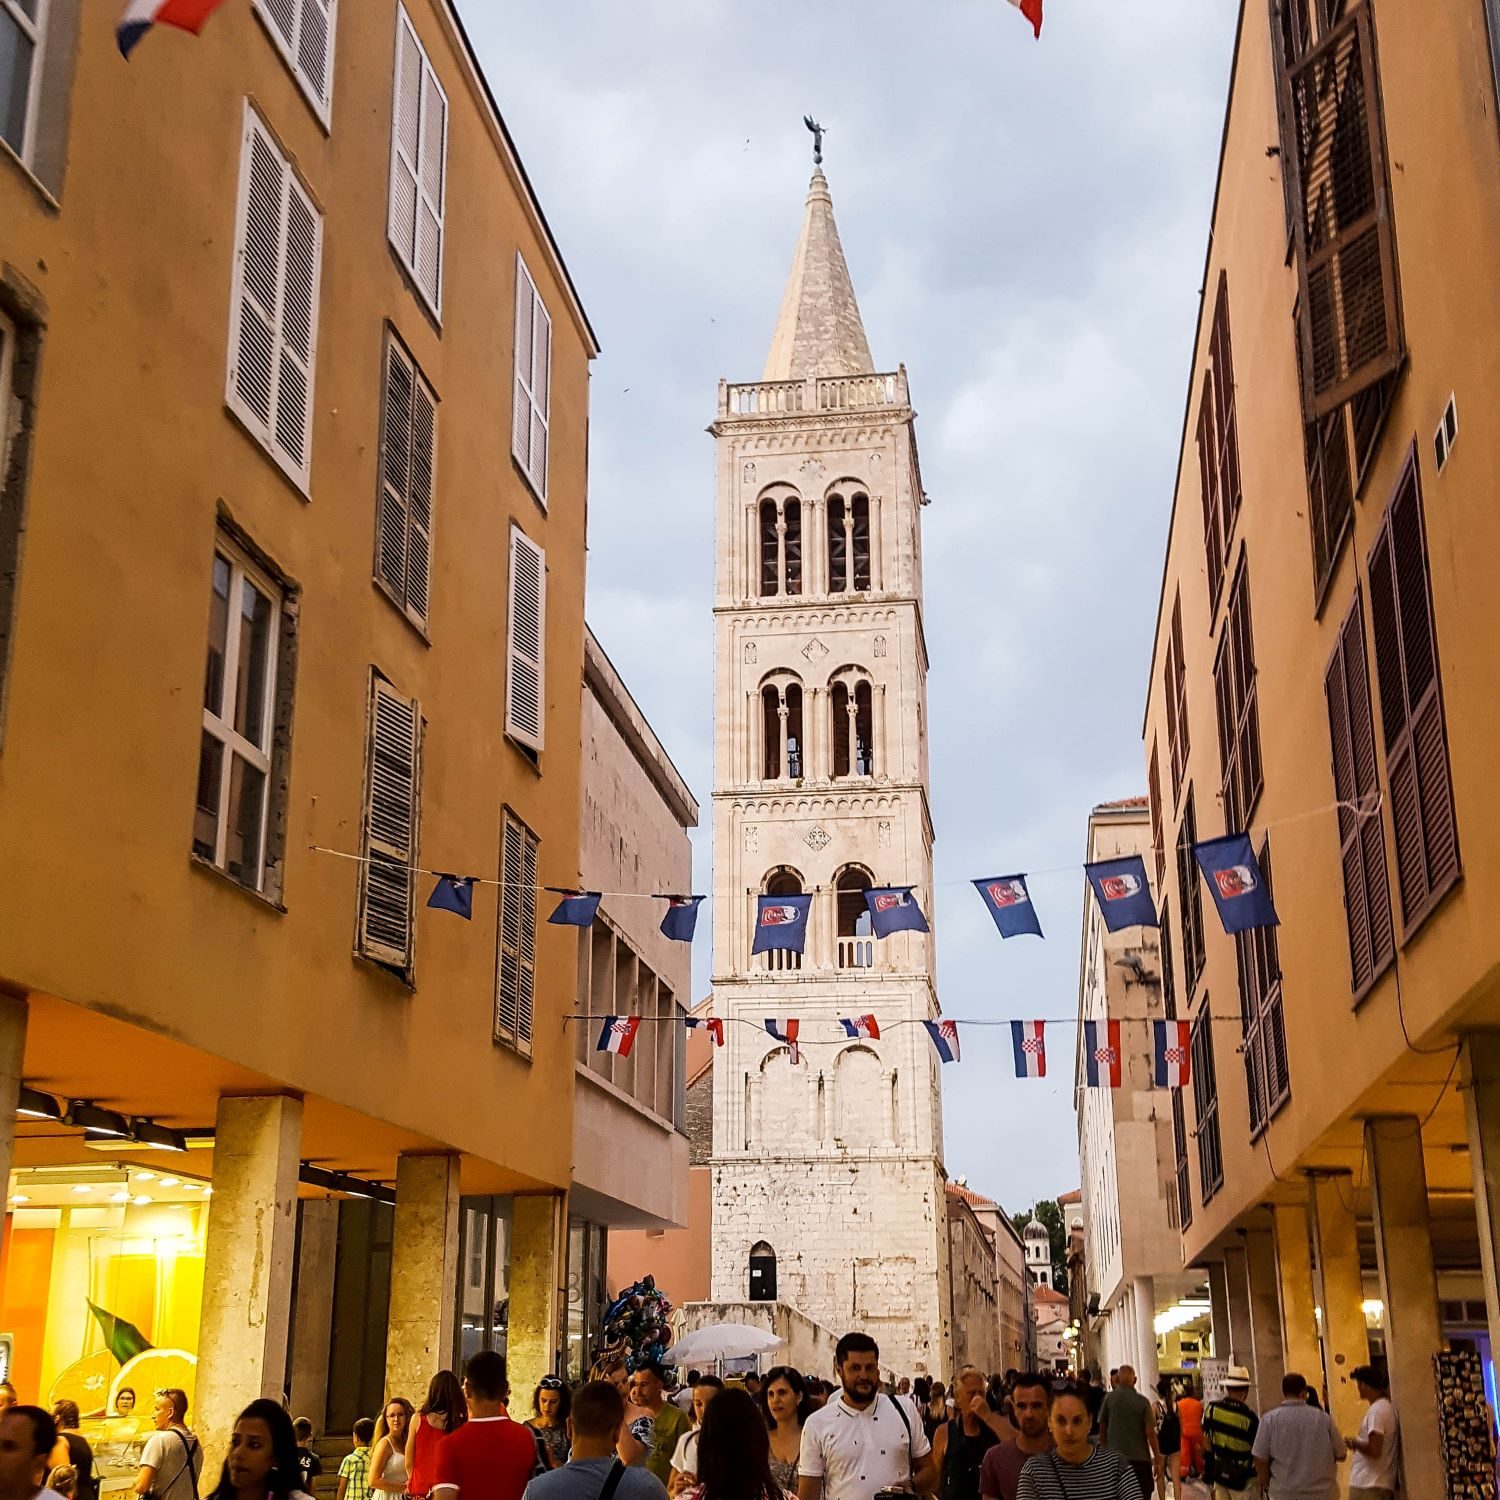 Gasse mit Blick auf den Turm in Zadar. Menschen laufen durch die Straße